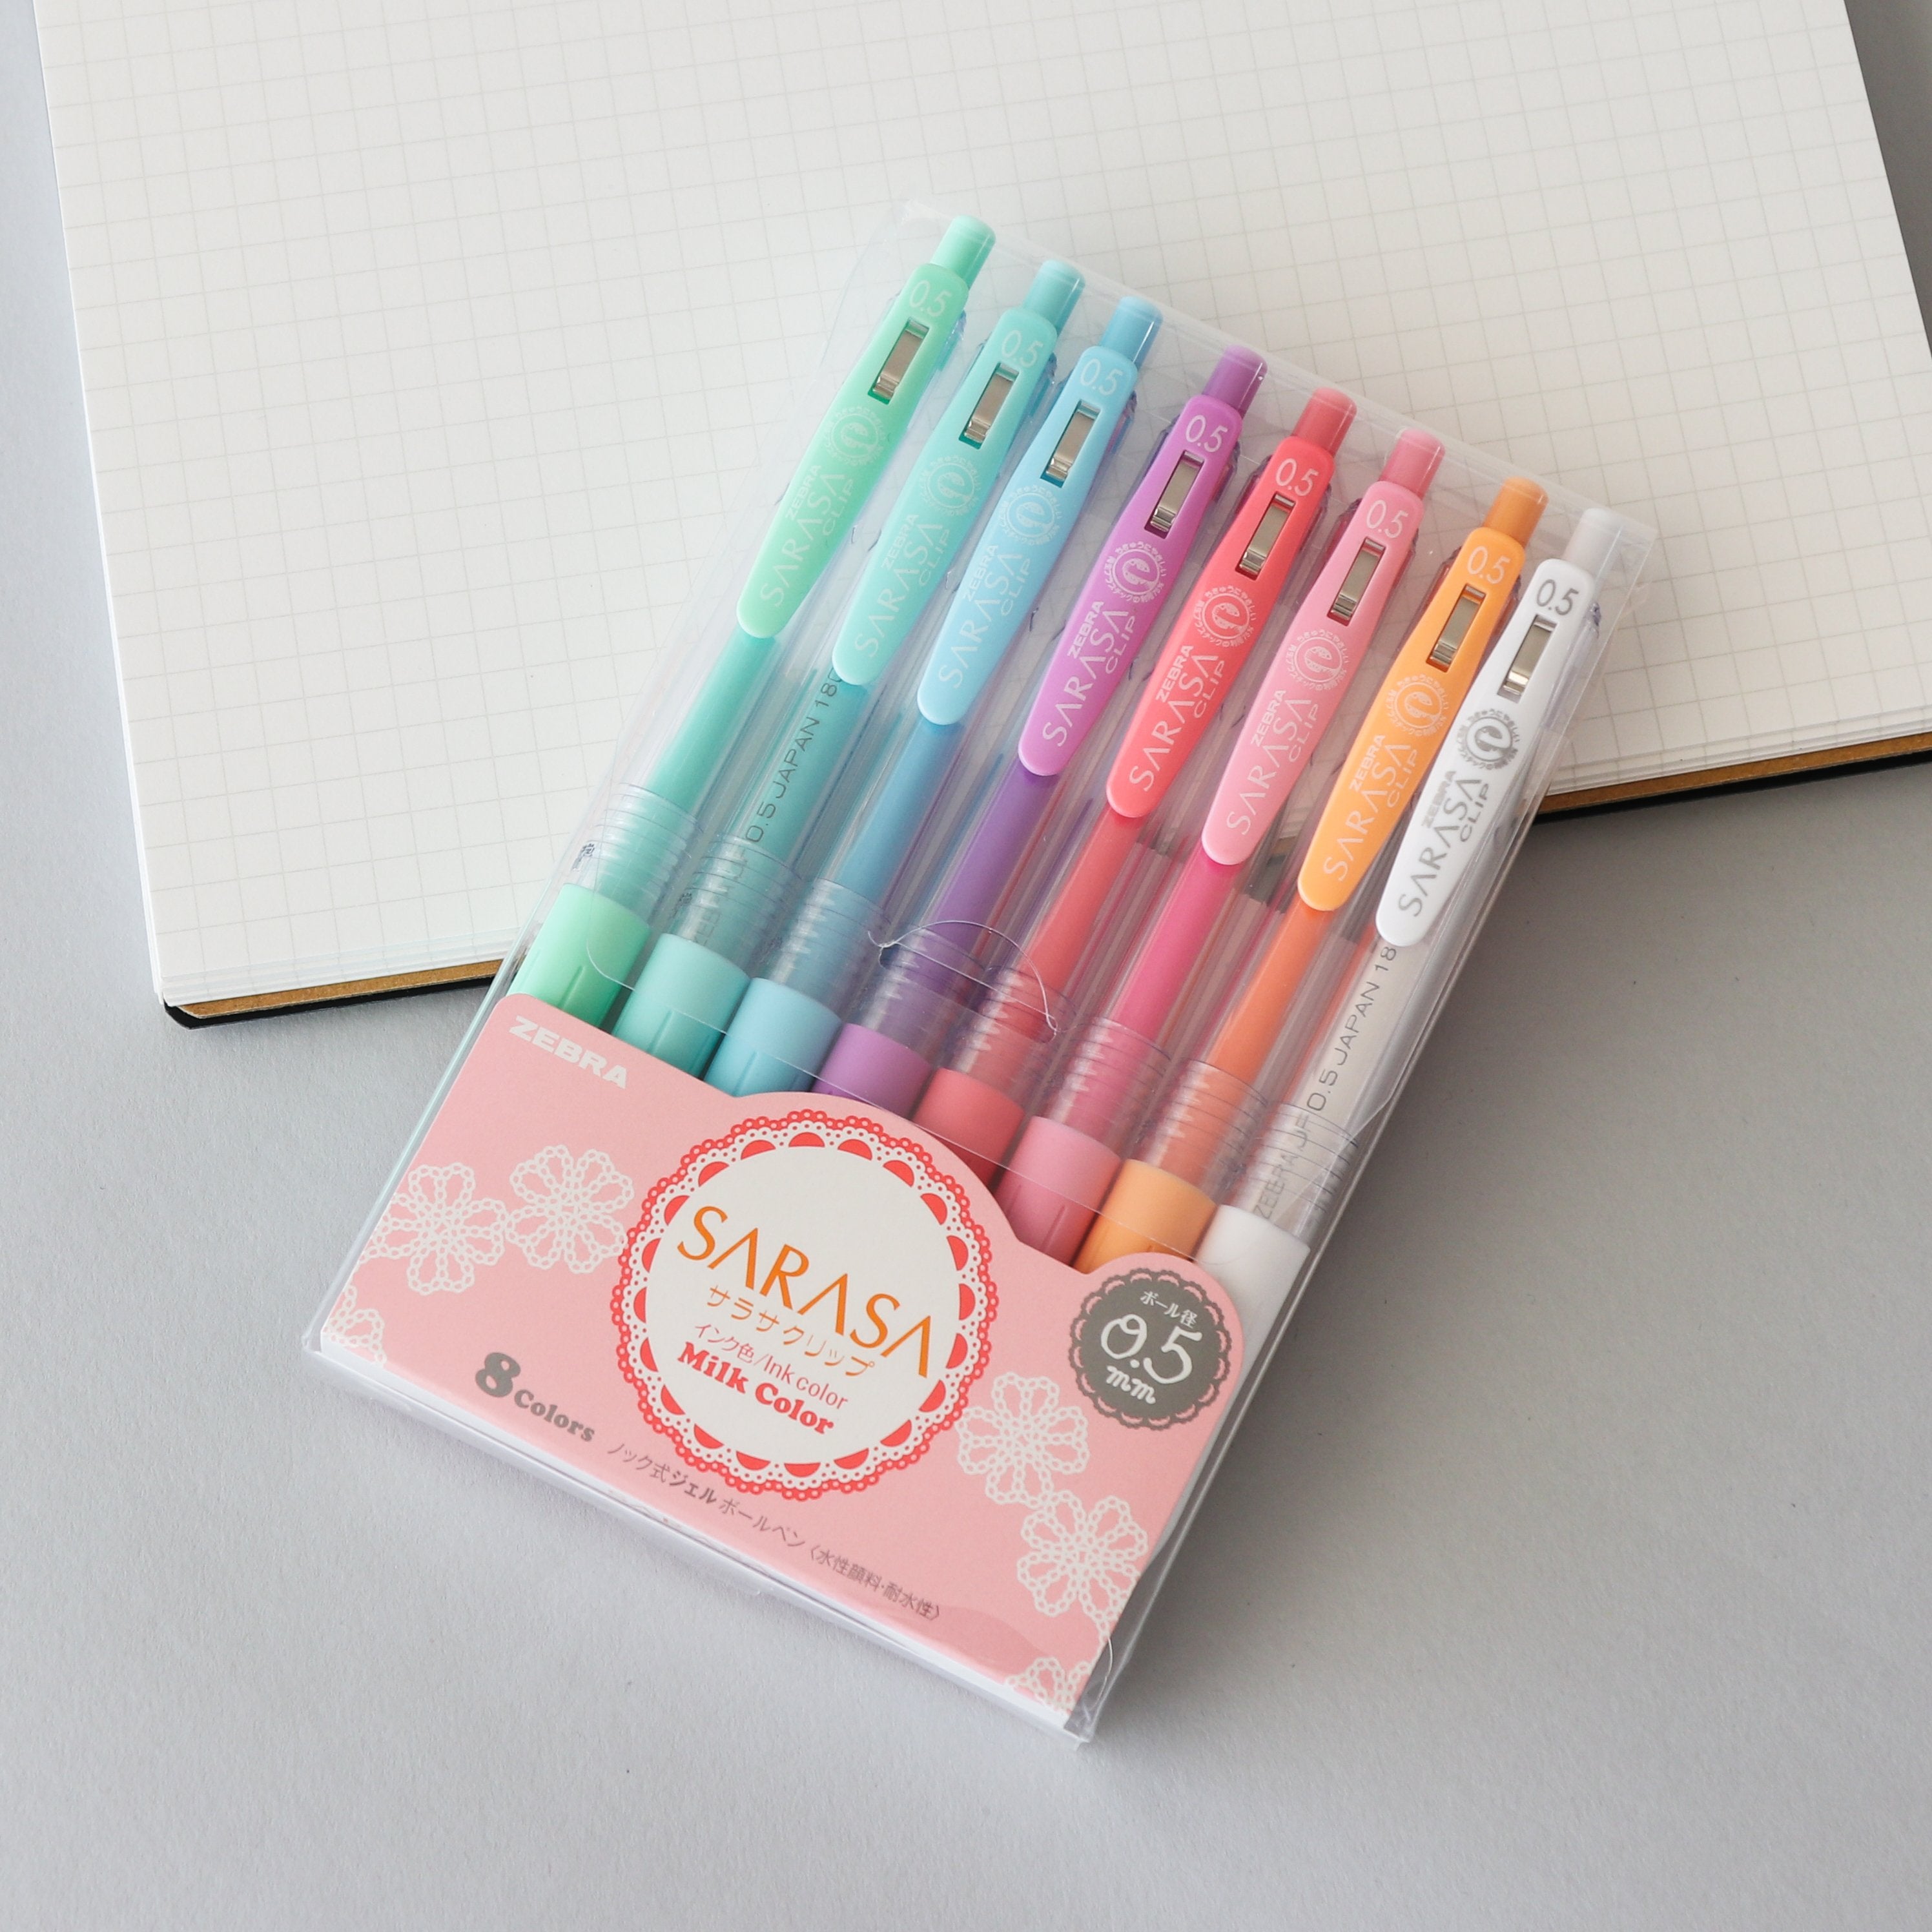 8-Color Pens